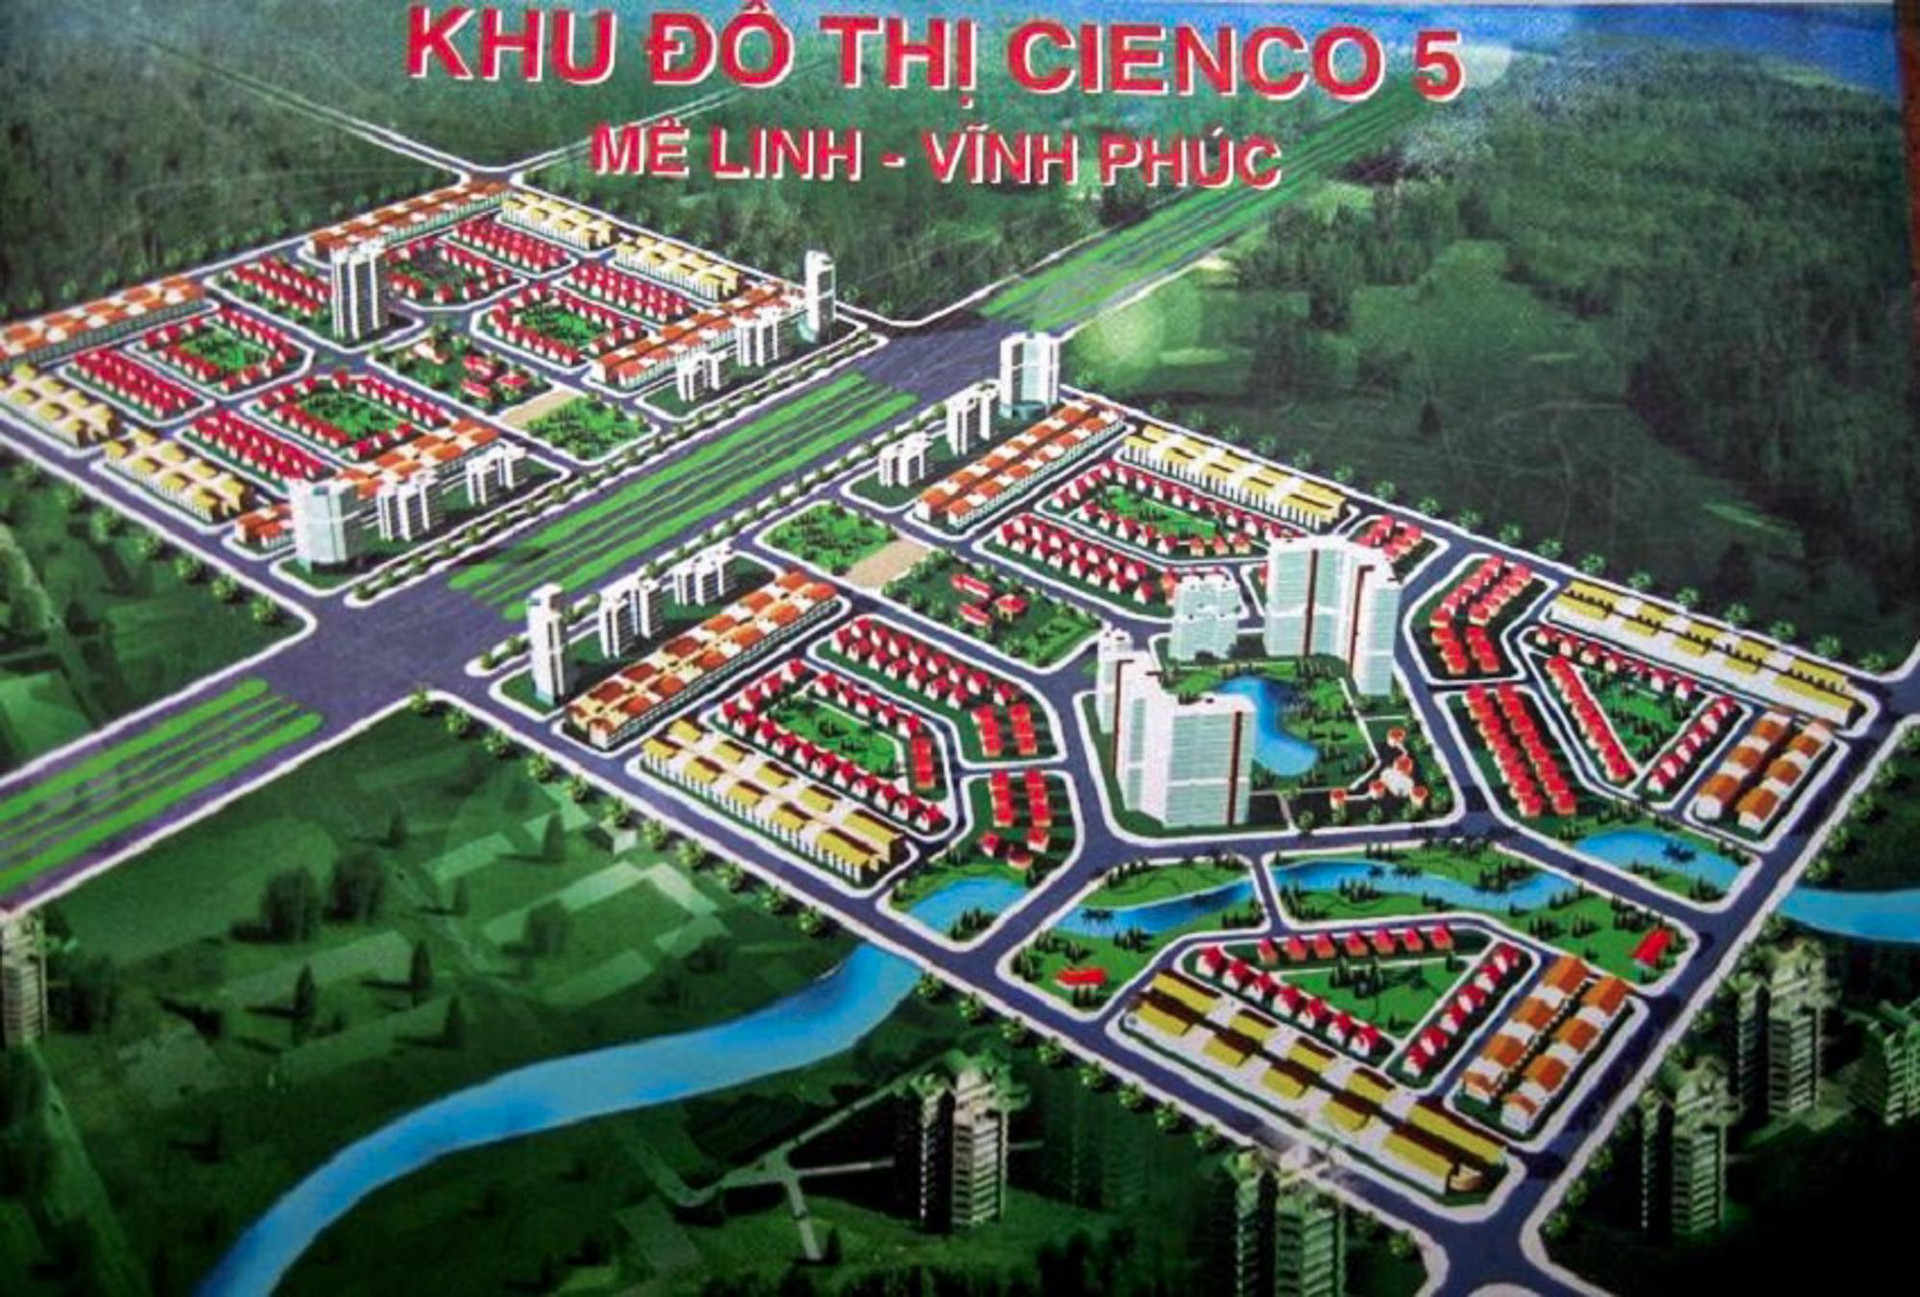 [Photo Essay] Sắp lên thành phố phía Bắc Hà Nội, làng biệt thự Mê Linh - nơi chôn vùi hàng nghìn tỷ đồng của nhà đầu tư hiện nay ra sao? - Ảnh 6.